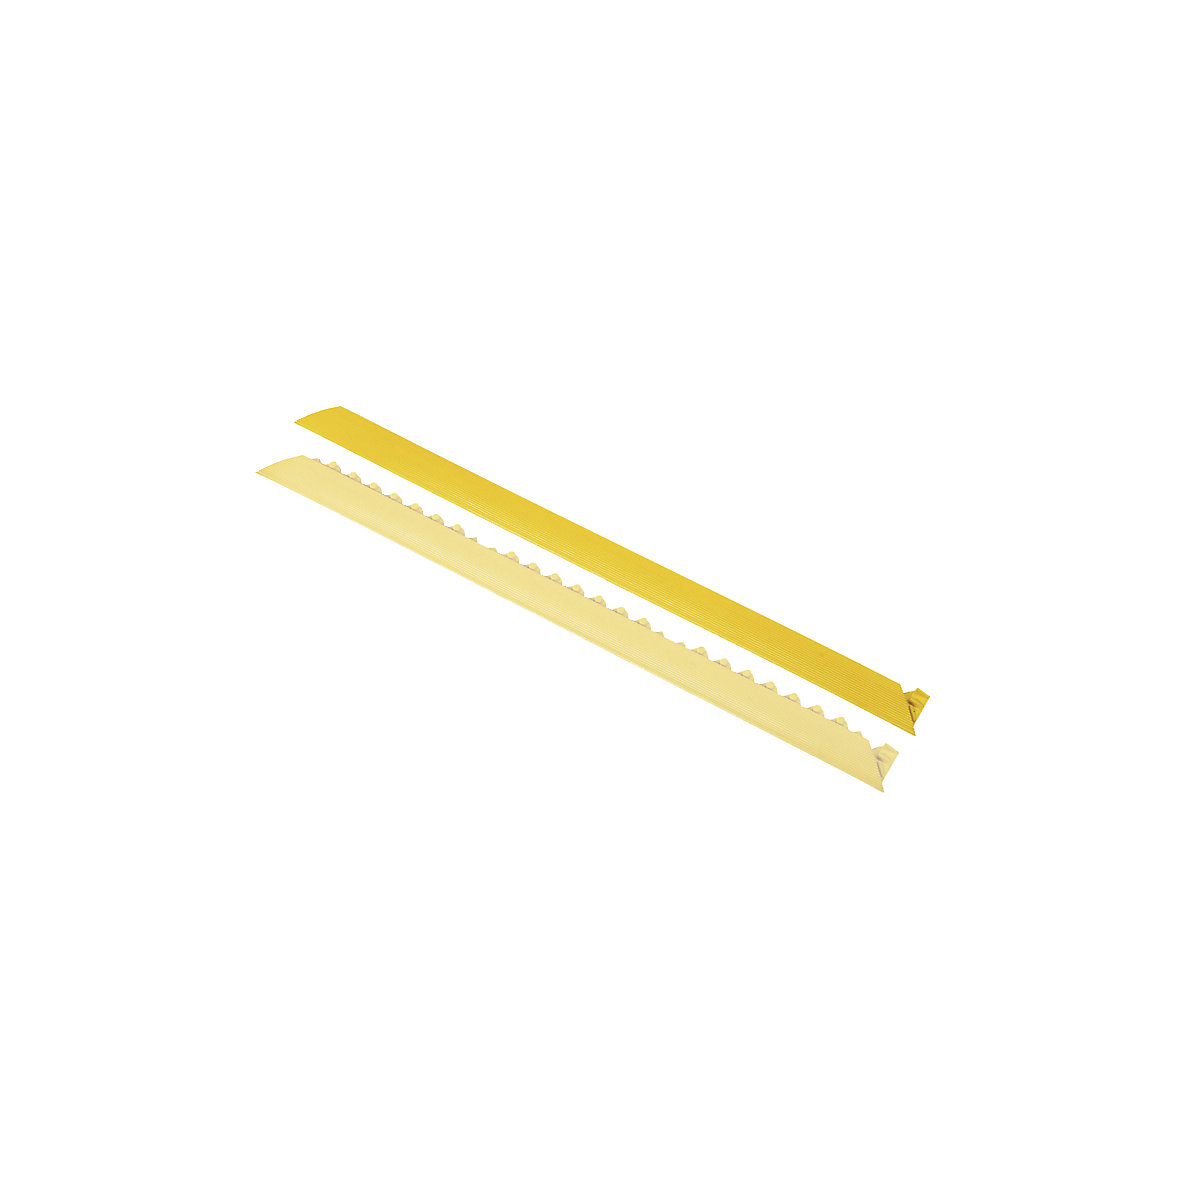 NOTRAX – Margine de acces, teșită, variantă feminină, galben